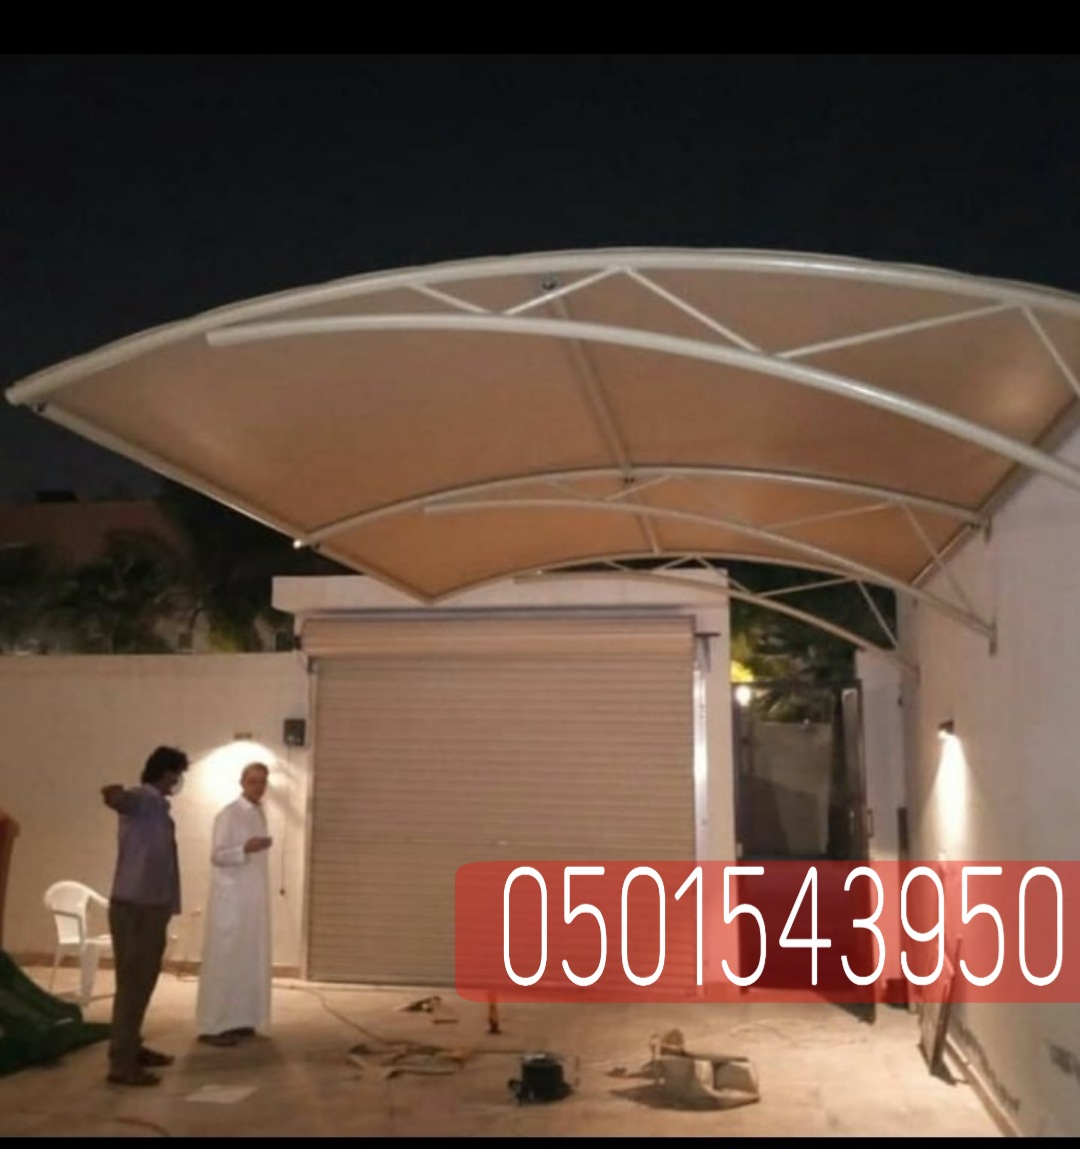 مظلات سيارات داخل البيت او خارجة في جدة , 0501543950